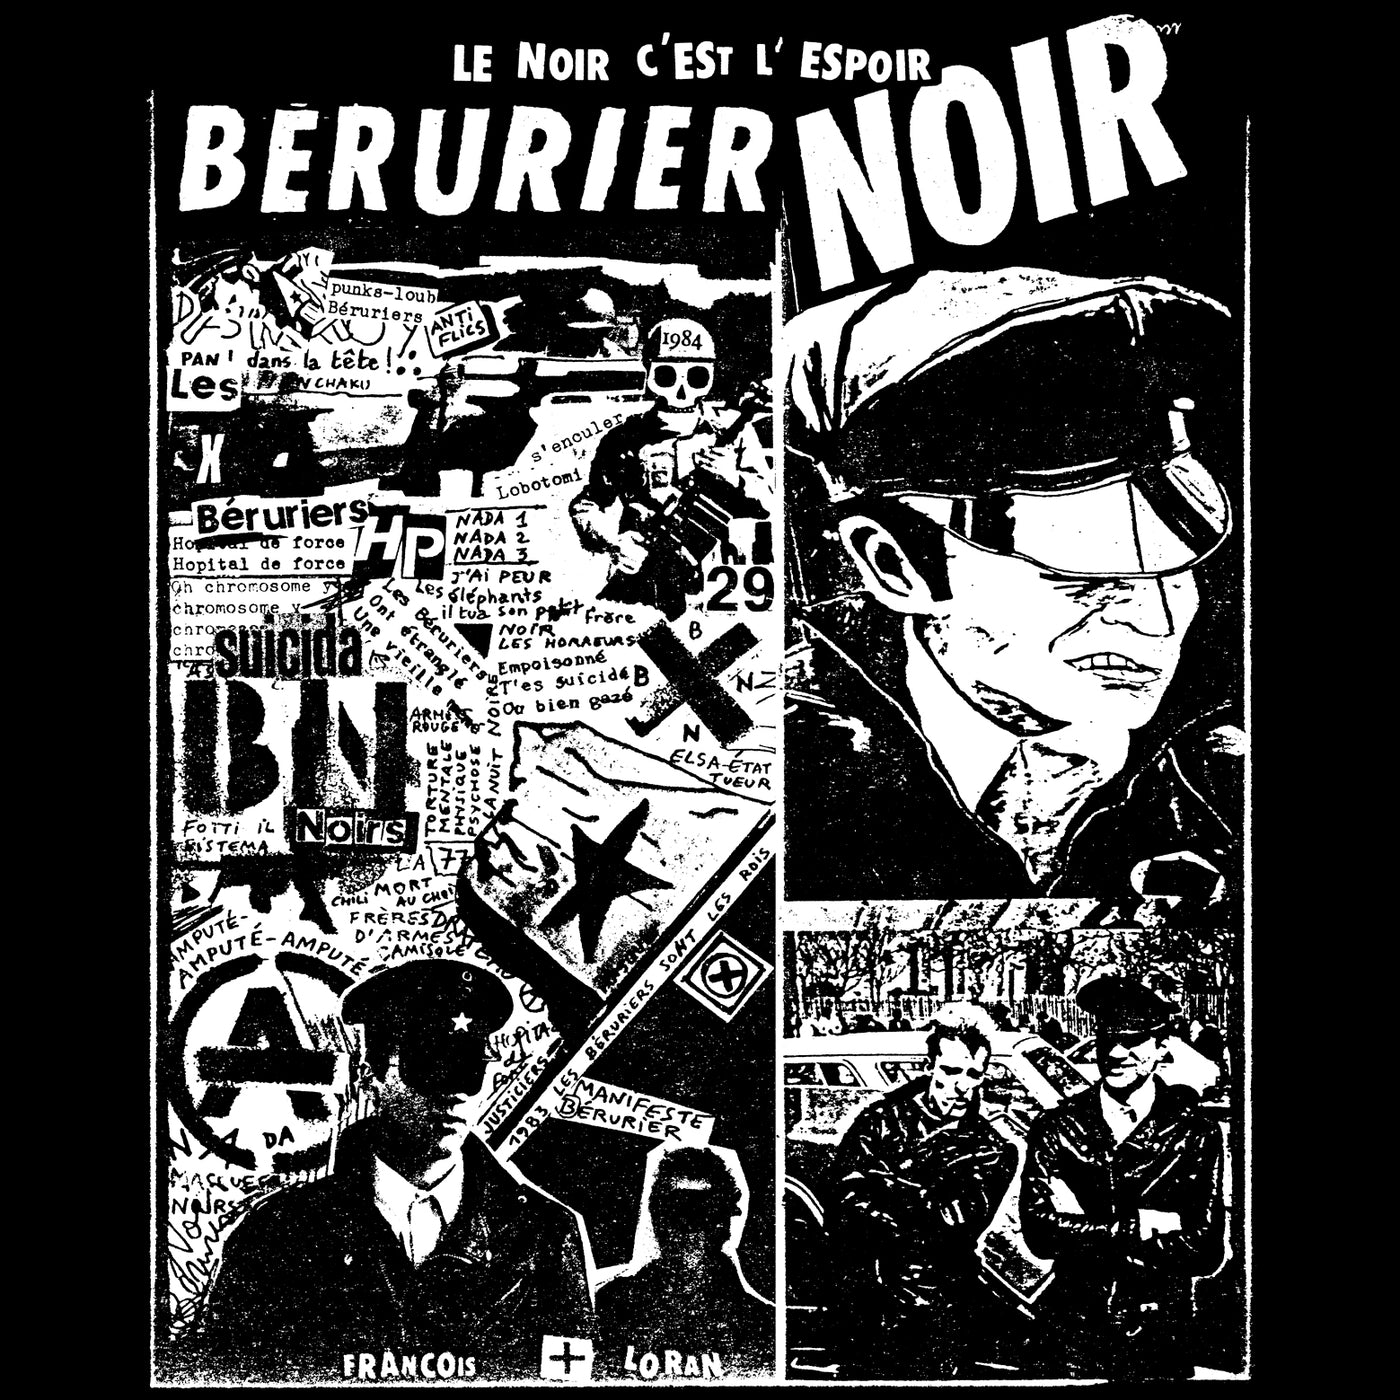 visuel du sweat-shirt BERURIER NOIR "1983", collage de textes, photos et dessins, "Le Noir C'est L'Espoir"